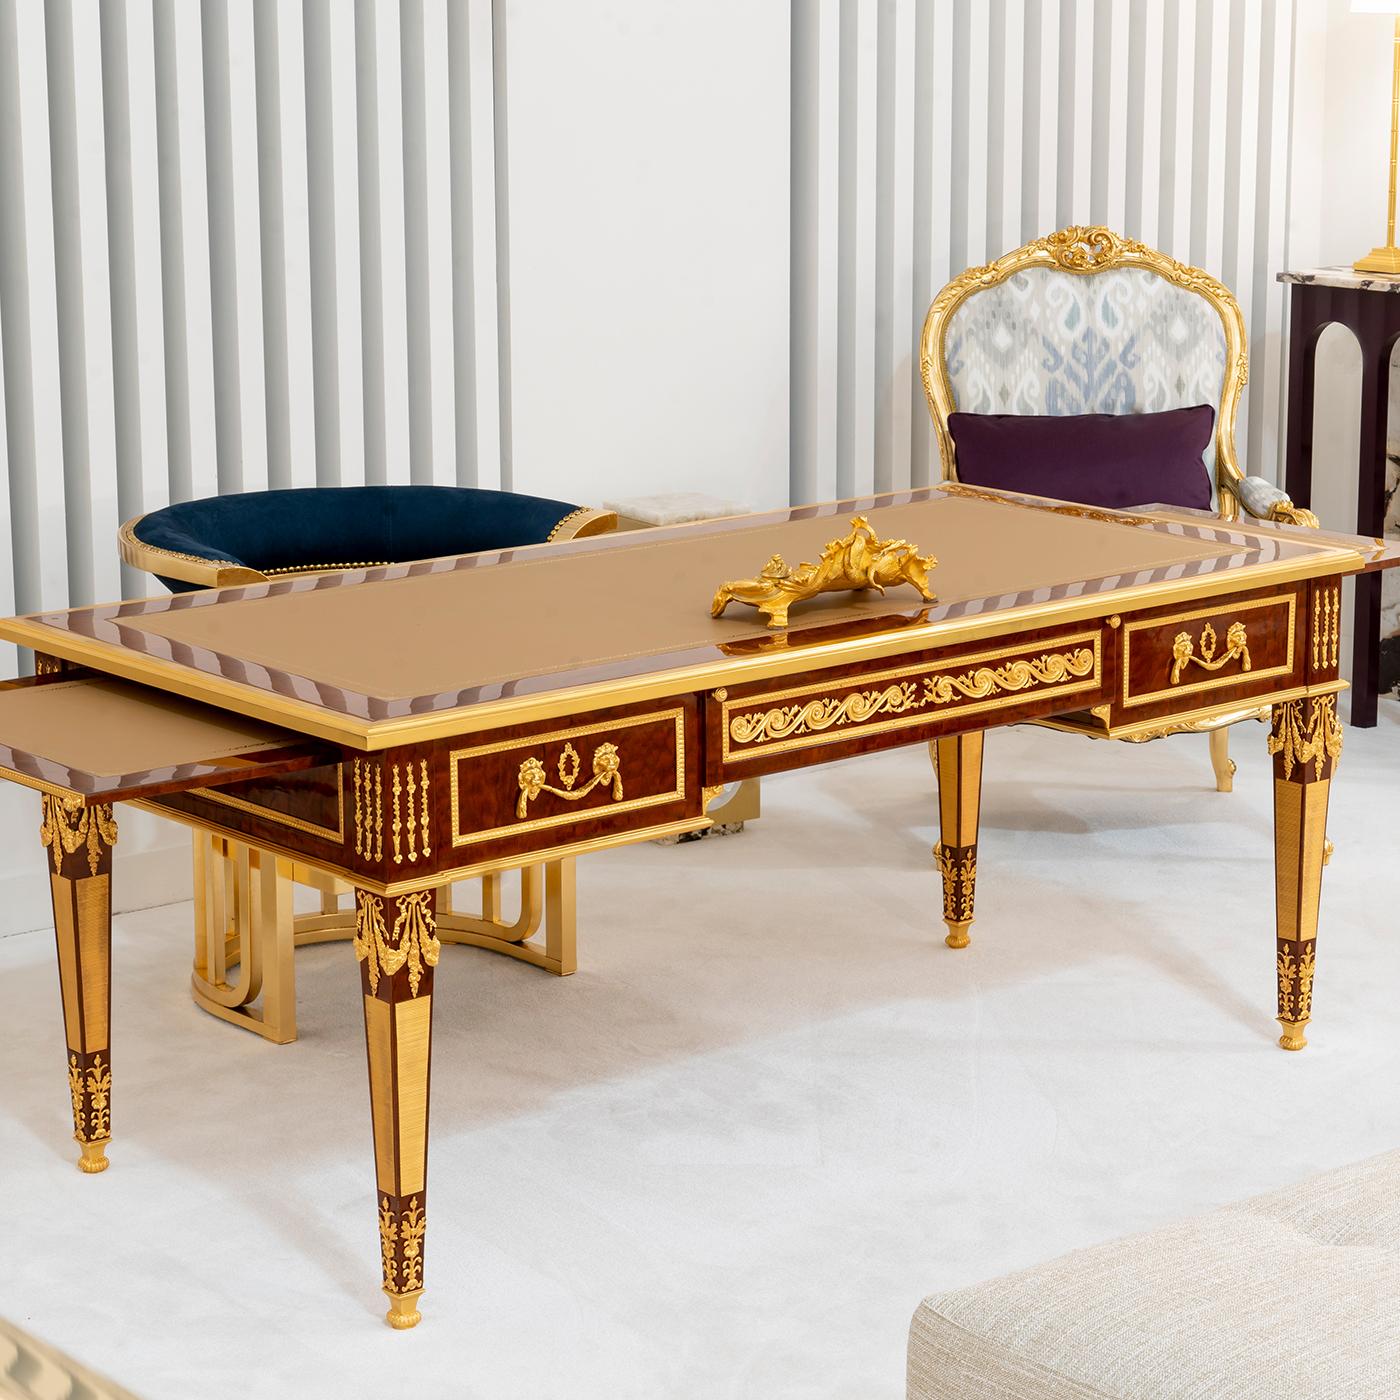 D'un design exclusif de style Louis XVI et d'un raffinement extraordinaire, ce bureau donnera une allure luxueuse à un intérieur sophistiqué. Fabriqué à la main en acajou de Pomele, il est enrichi de décorations en bronze plaqué or 24K. Le dessus